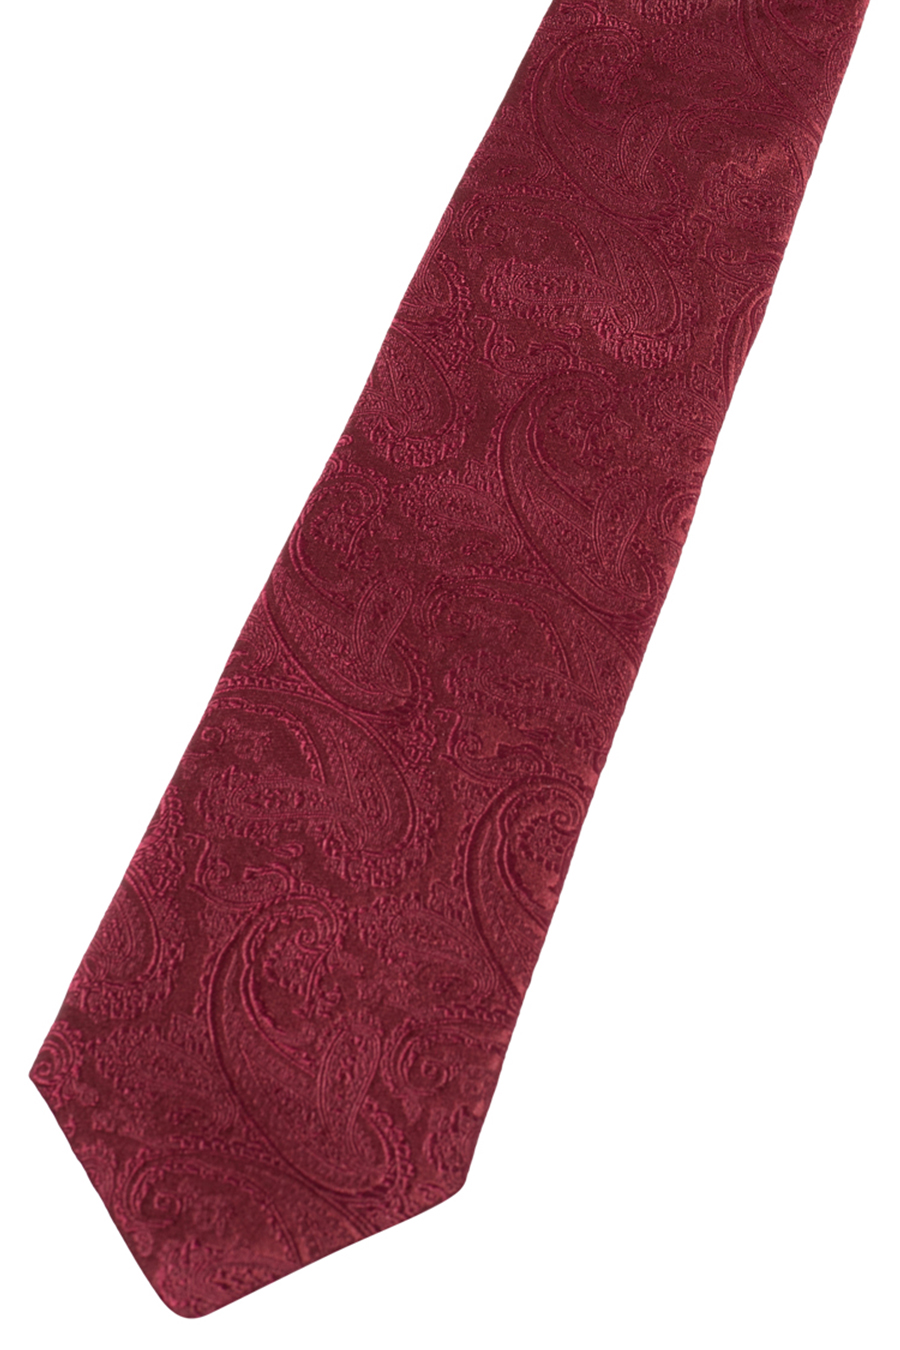 ETERNA 1863 Krawatte aus reiner dunkelrot cm breit 7,5 Seide